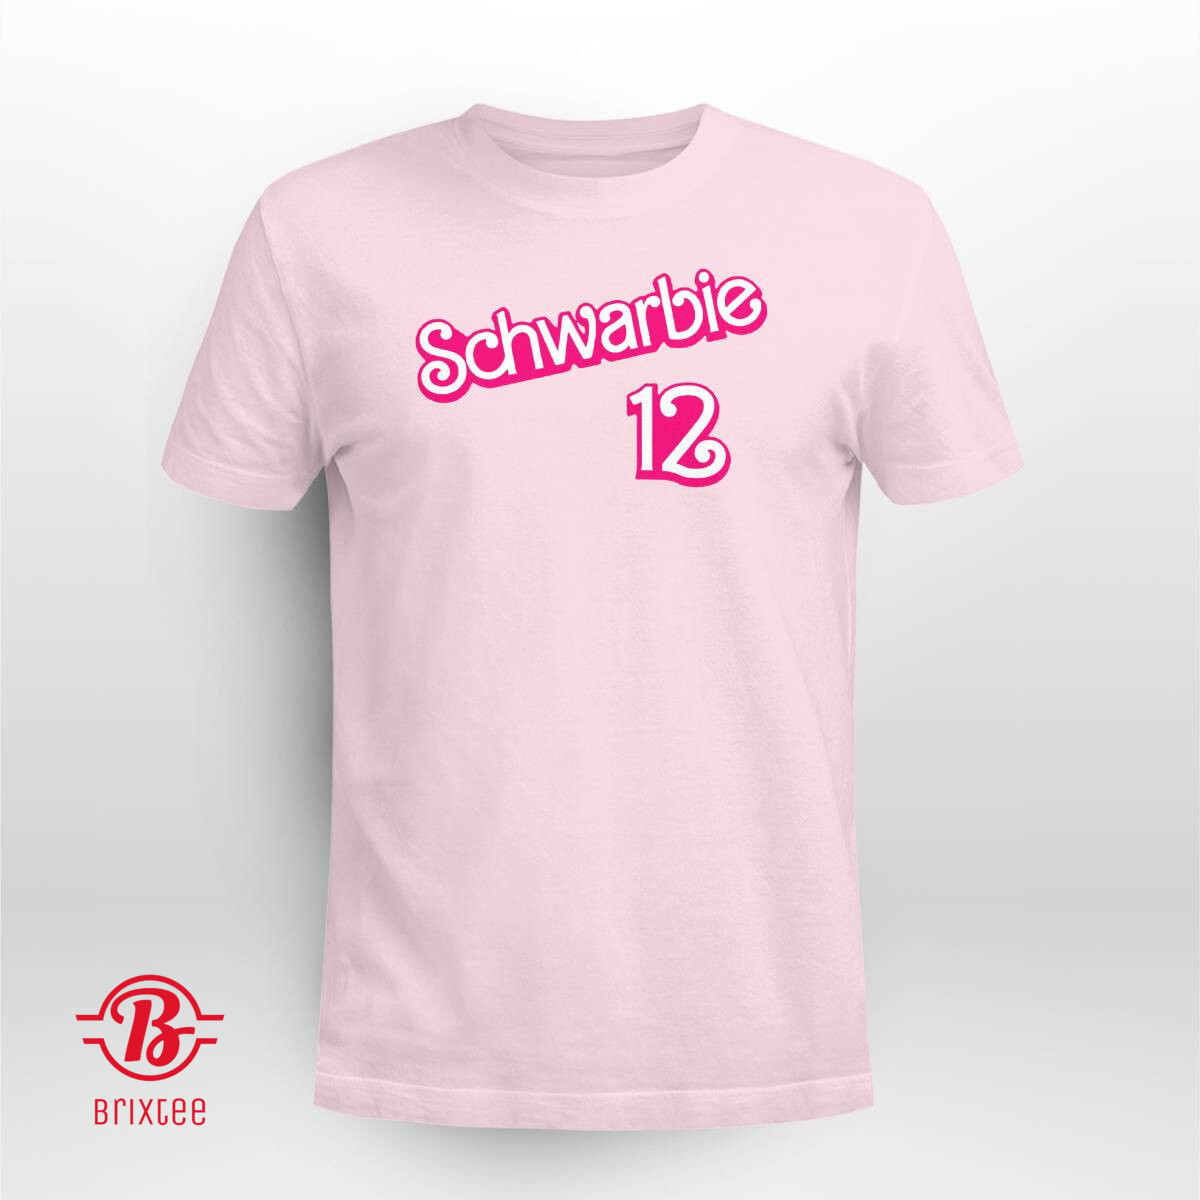 Kyle Schwarber Schwarbie Barbie Shirt Pink